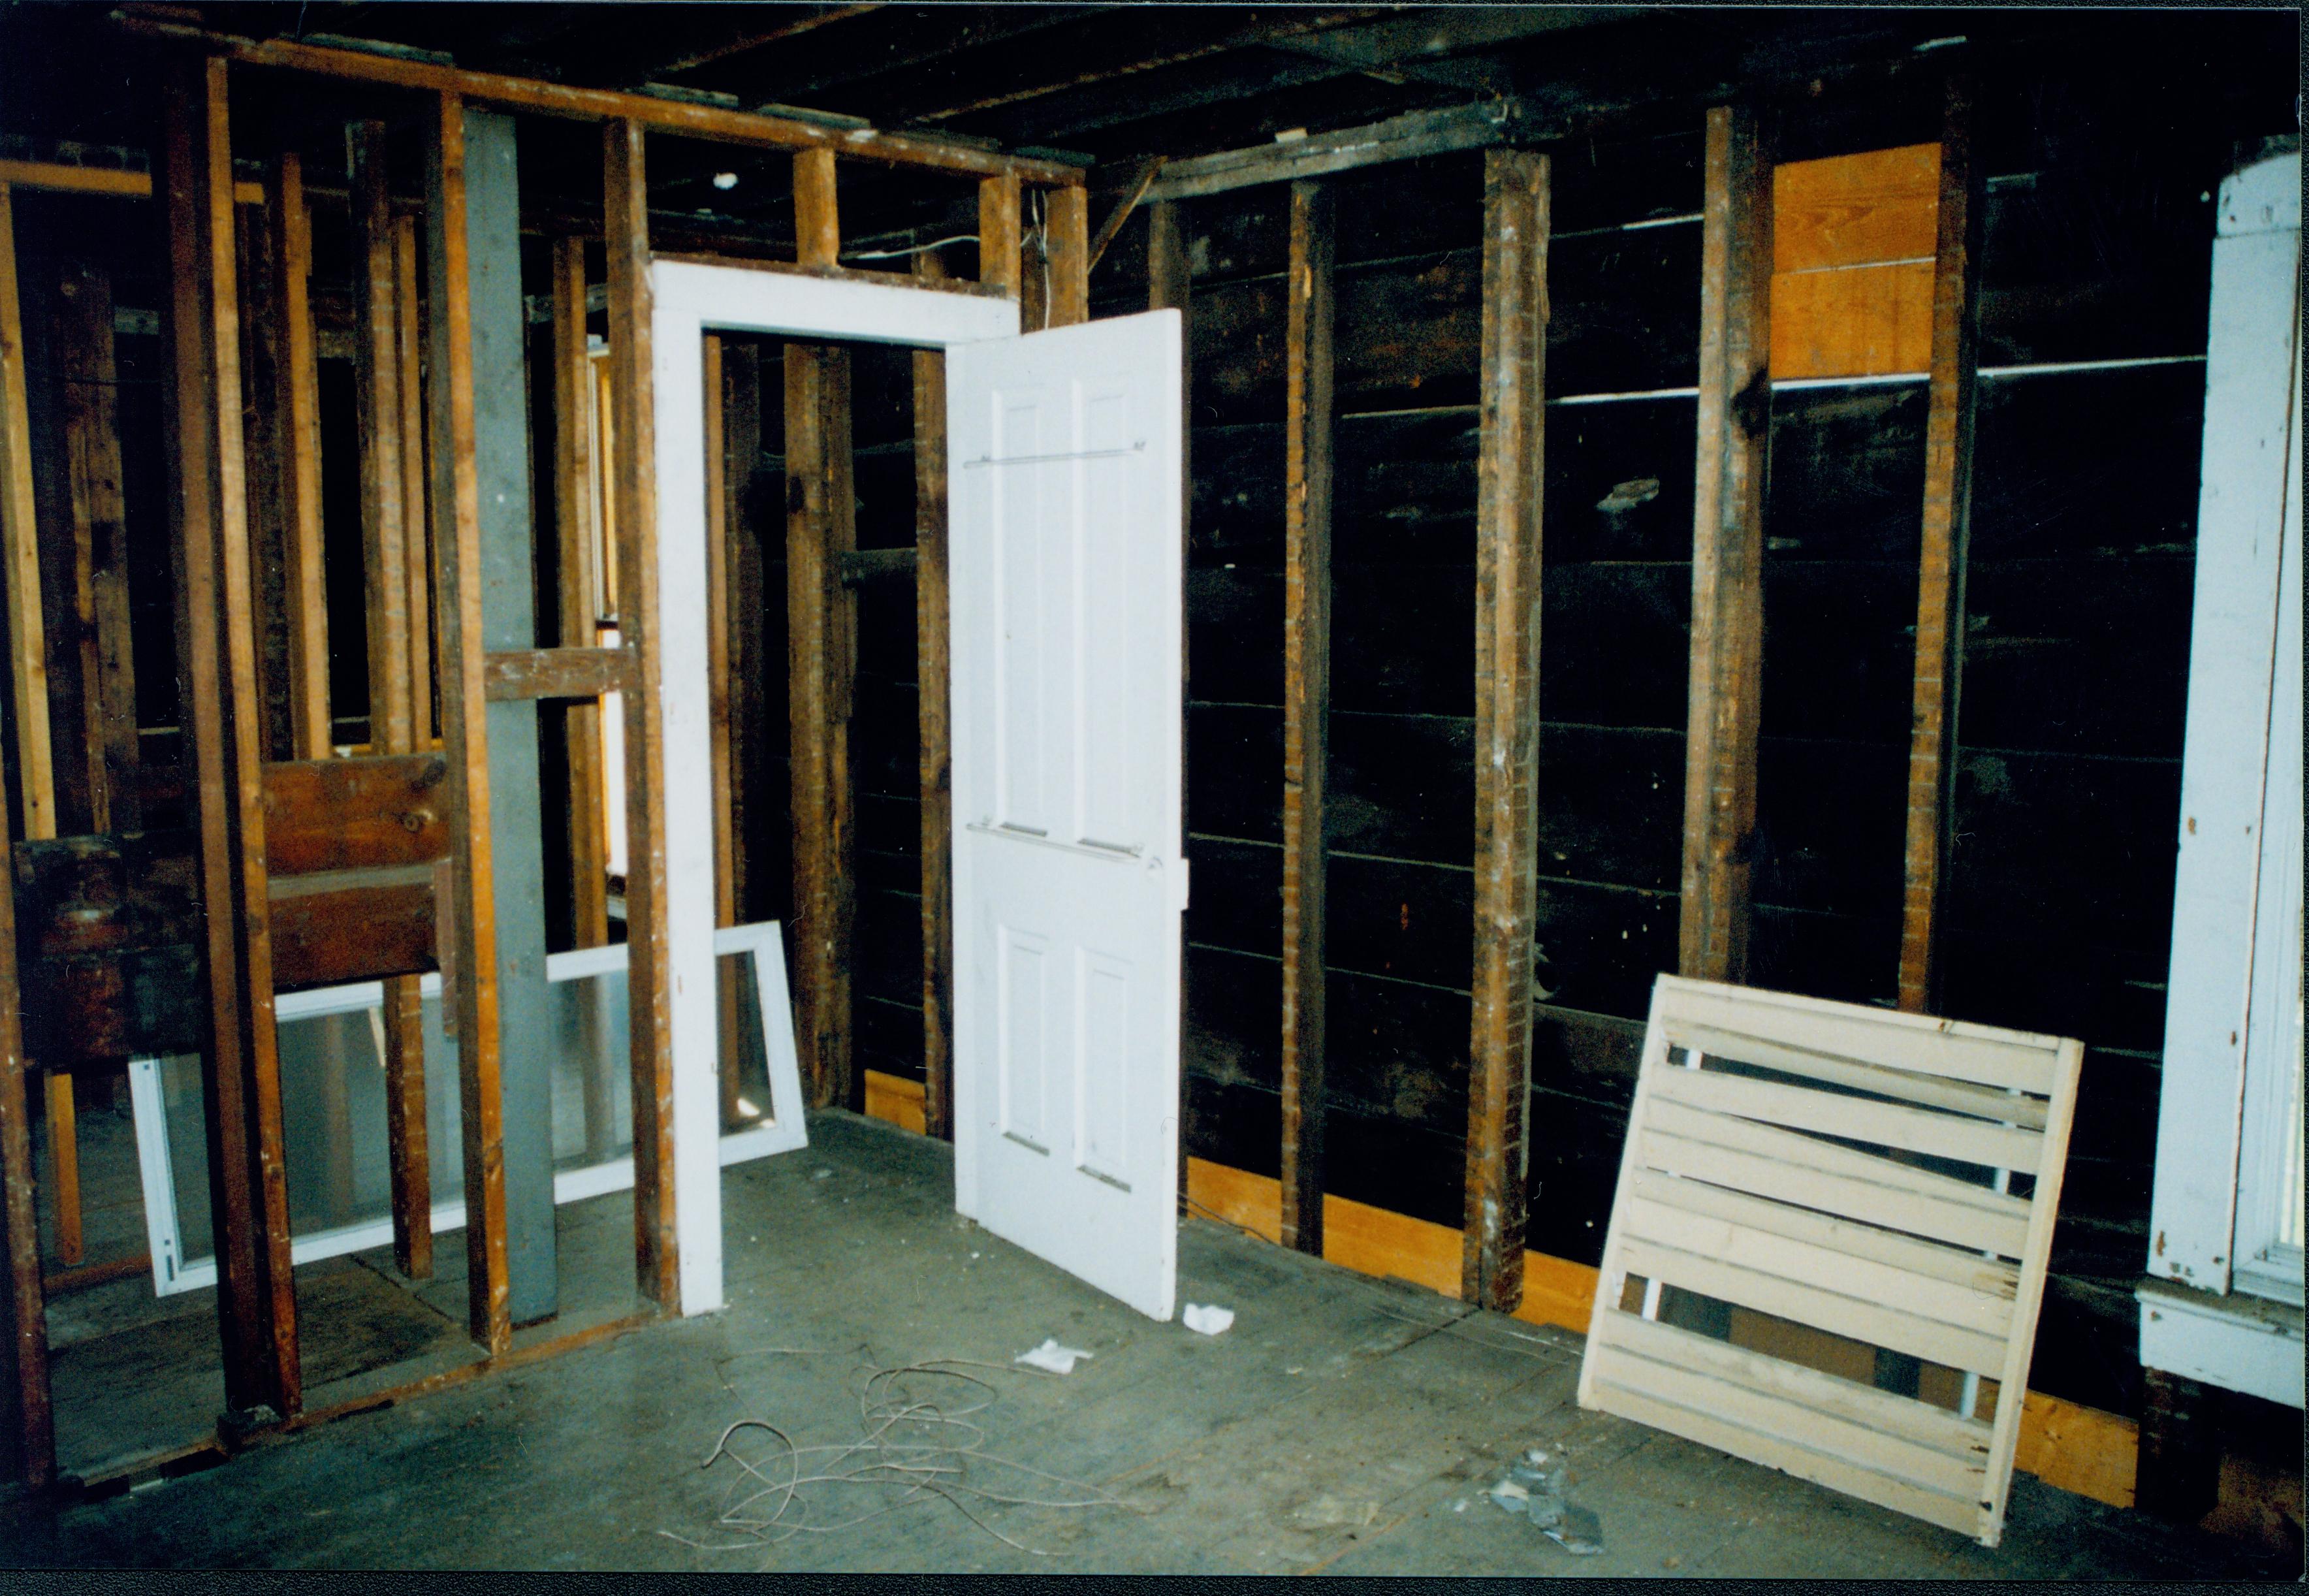 NA 11; 1999-7 Morse House, Interior